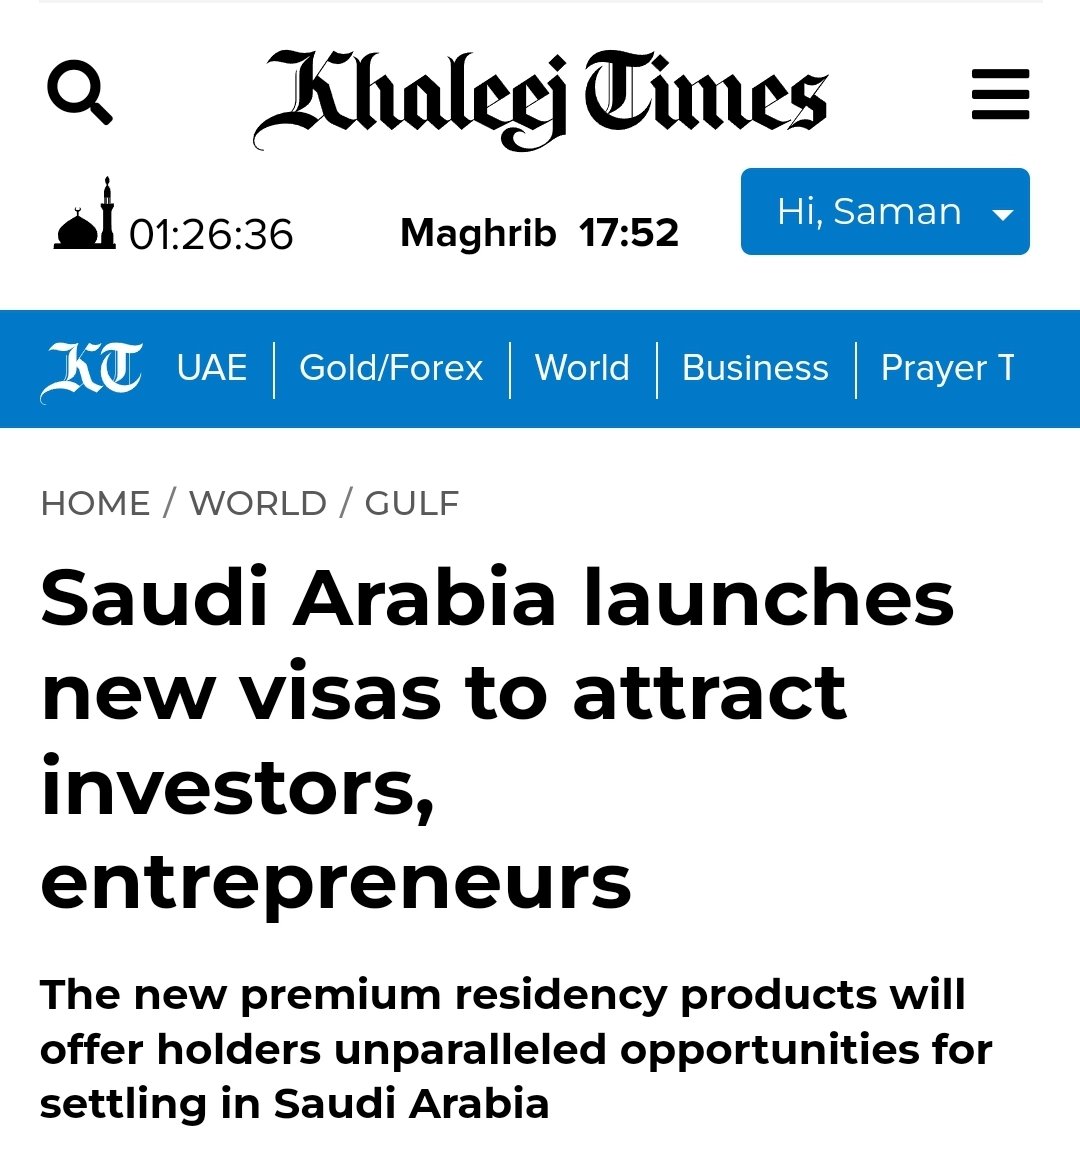 عربستان سعودی ویزای کارآفرینی برای استارتاپ‌ها تعریف کرده.
ویزای اقامت «کارآفرین» برای کارآفرینان و صاحبان پروژه‌های نوآورانه در نظر گرفته شده که مشتاق راه‌اندازی و توسعه استارت‌آپ‌های خود در عربستان سعودی هستند.